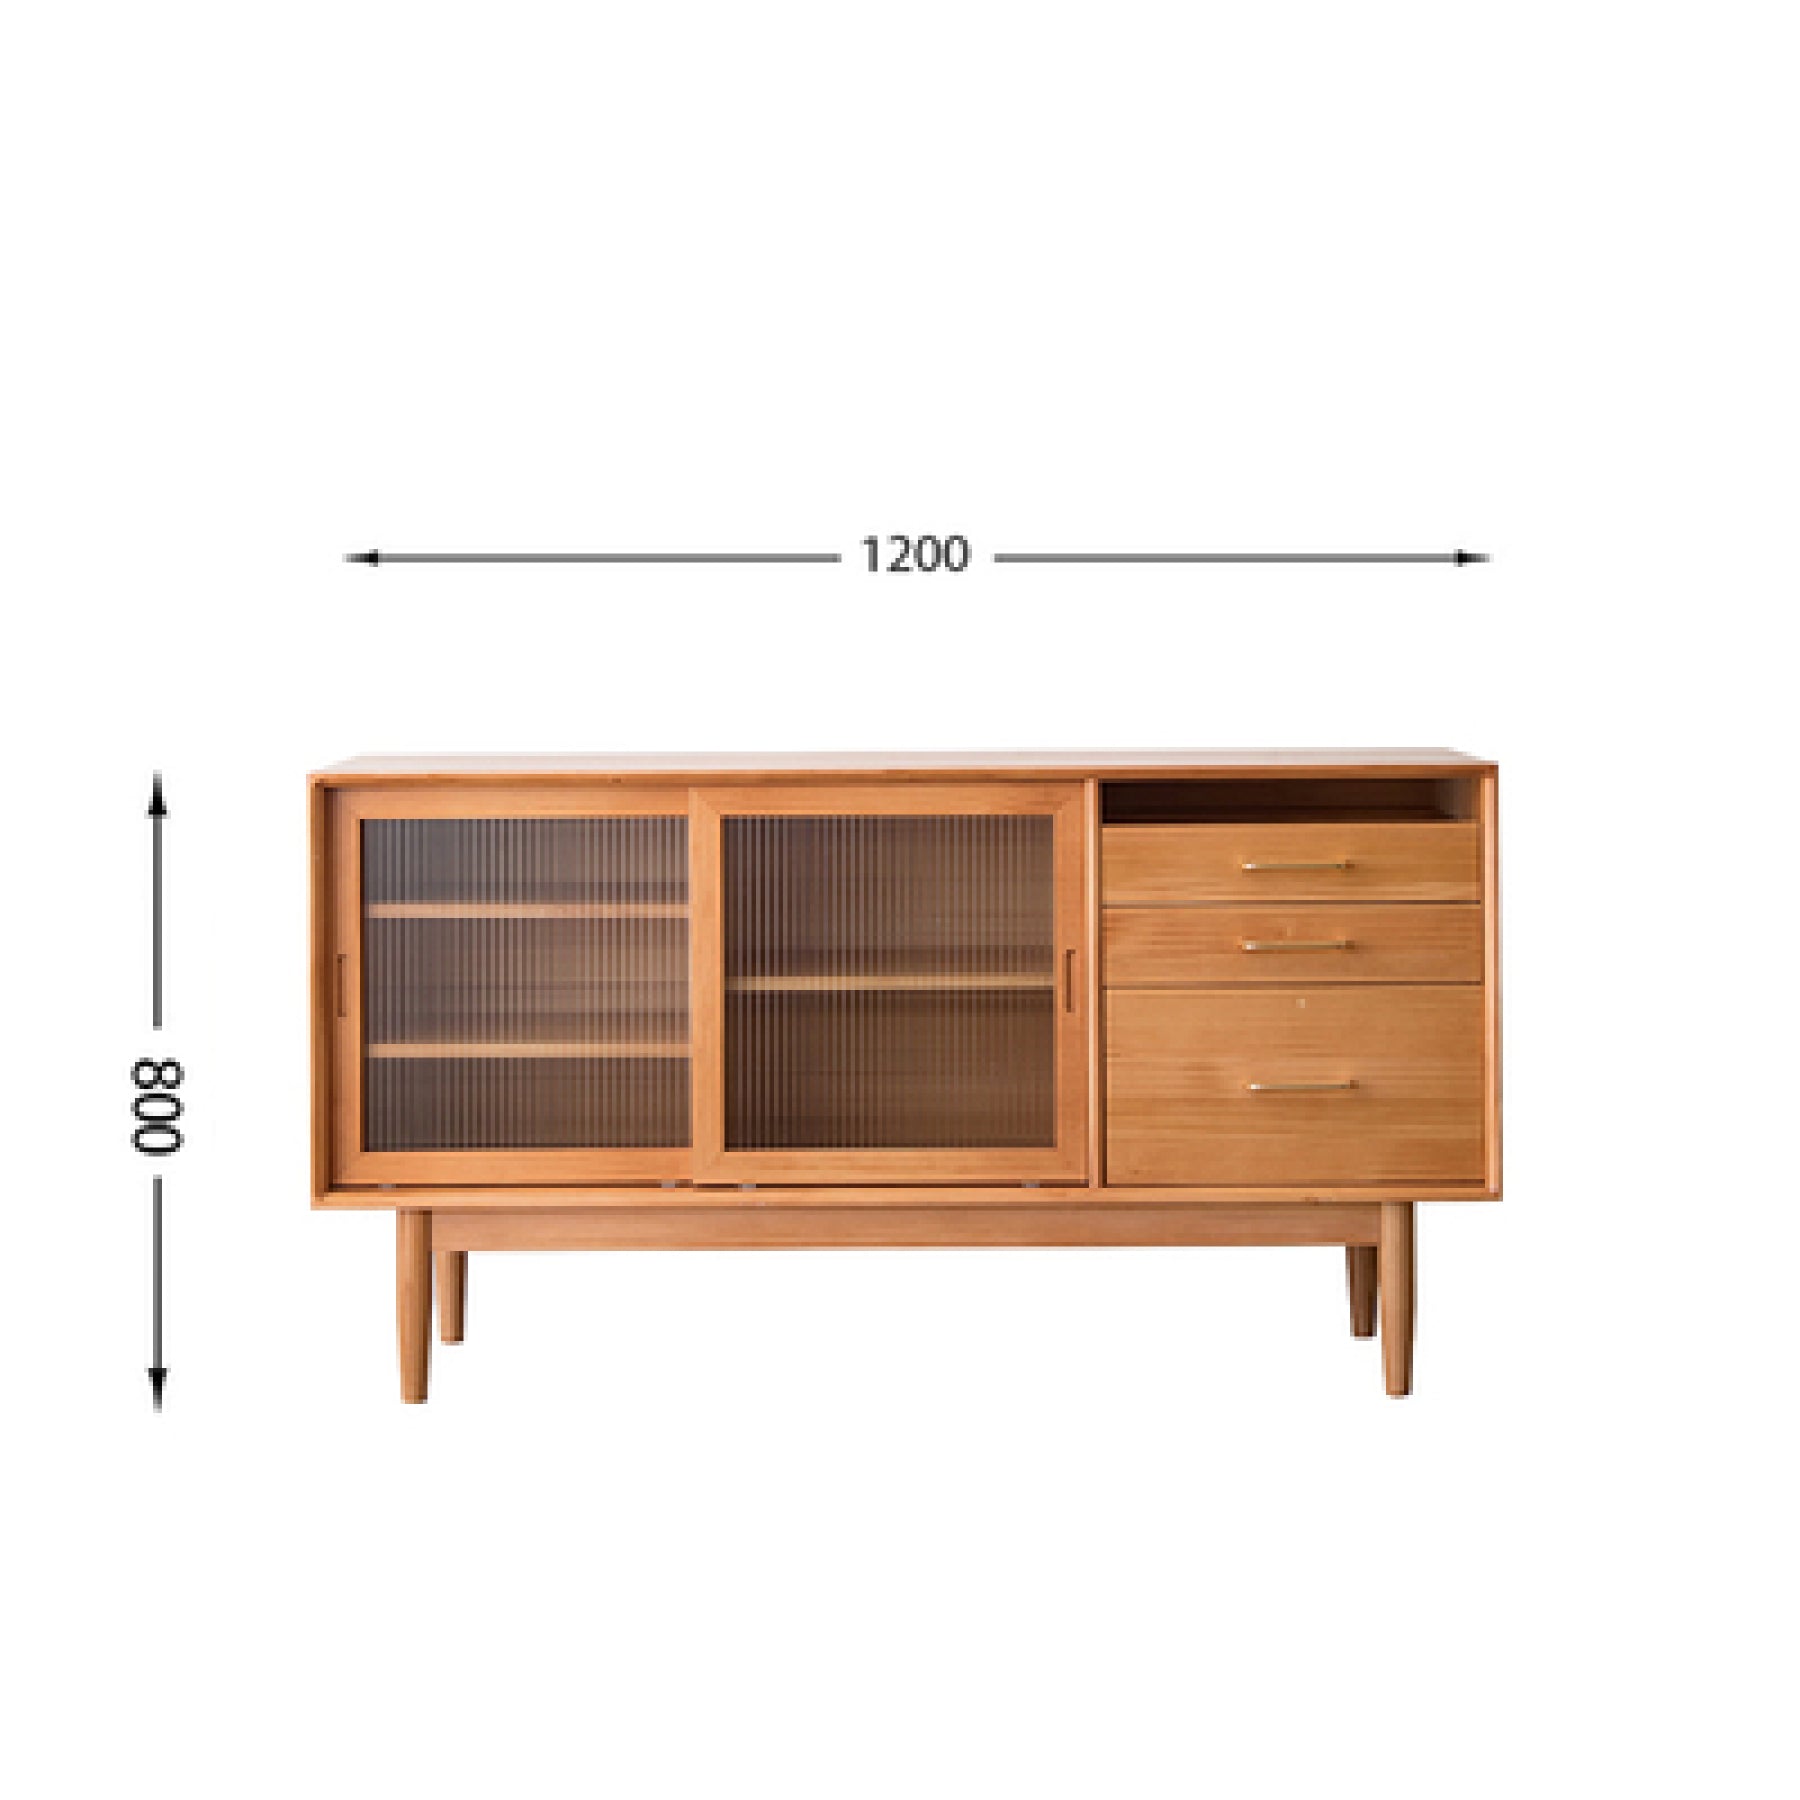 Tom Pine Wood Kitchen Storage Cabinet I